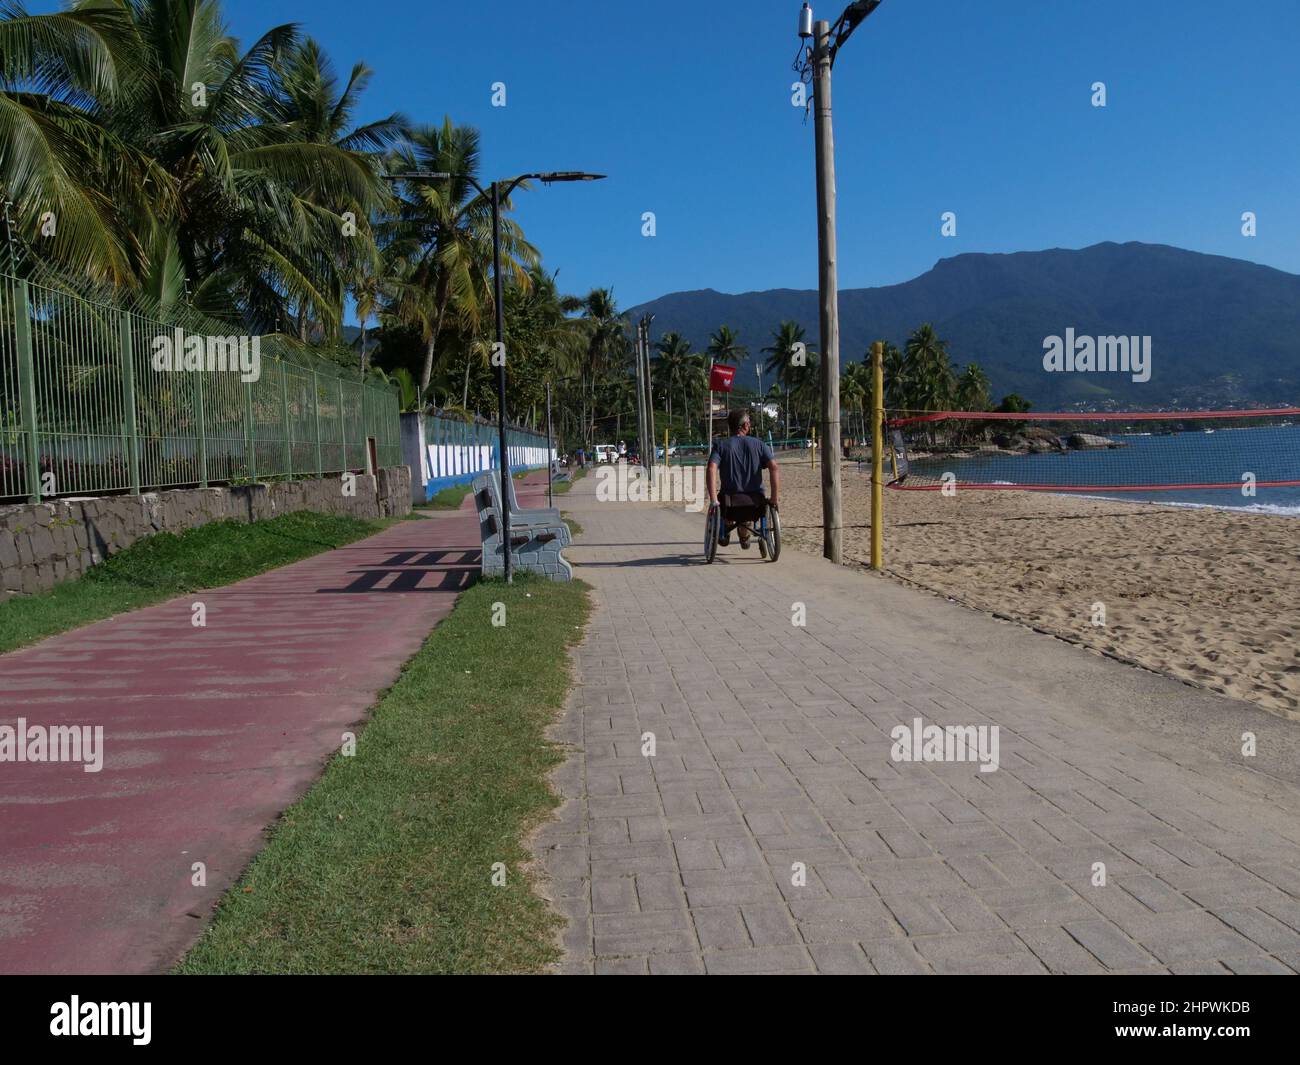 Ein behinderter Mann im Rollstuhl nähert sich dem Betrachter. Er nutzt den Fußgängerweg auf der Insel Ilhabela, Brasilien, was sehr praktisch ist Stockfoto